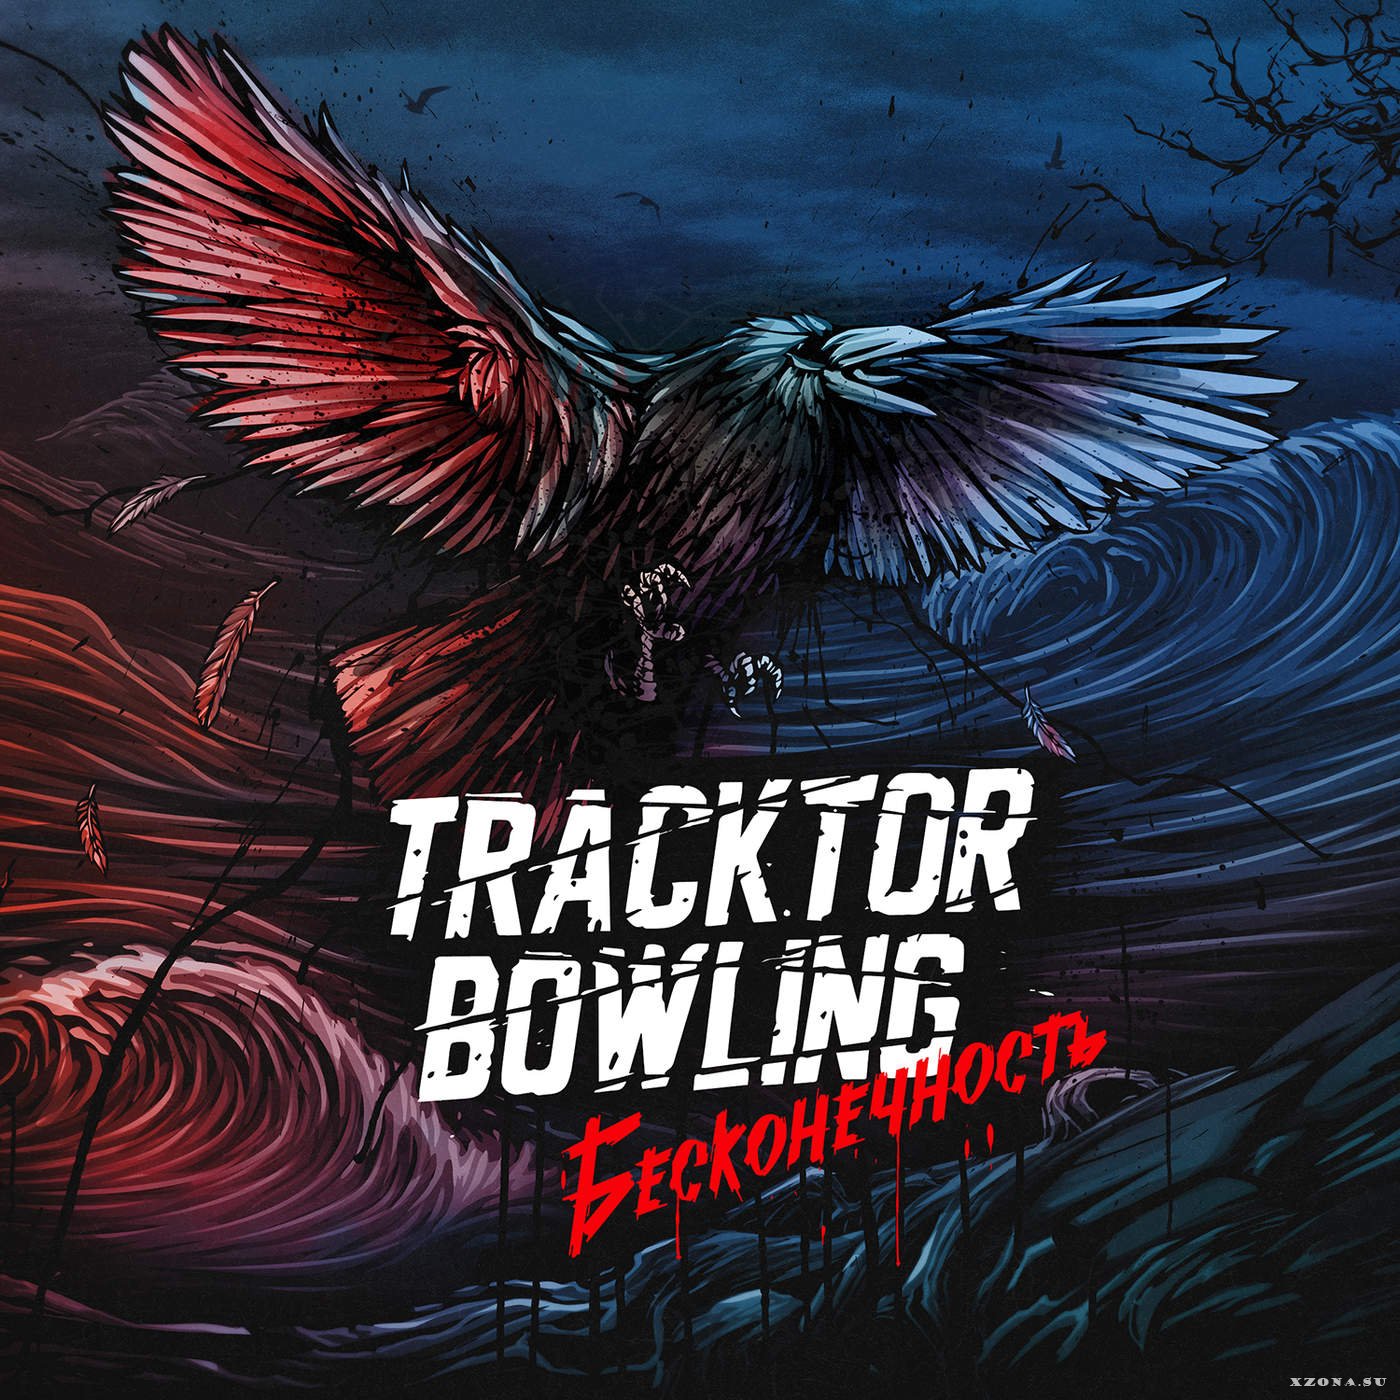 Скачать альбом mp3 tracktor bowling